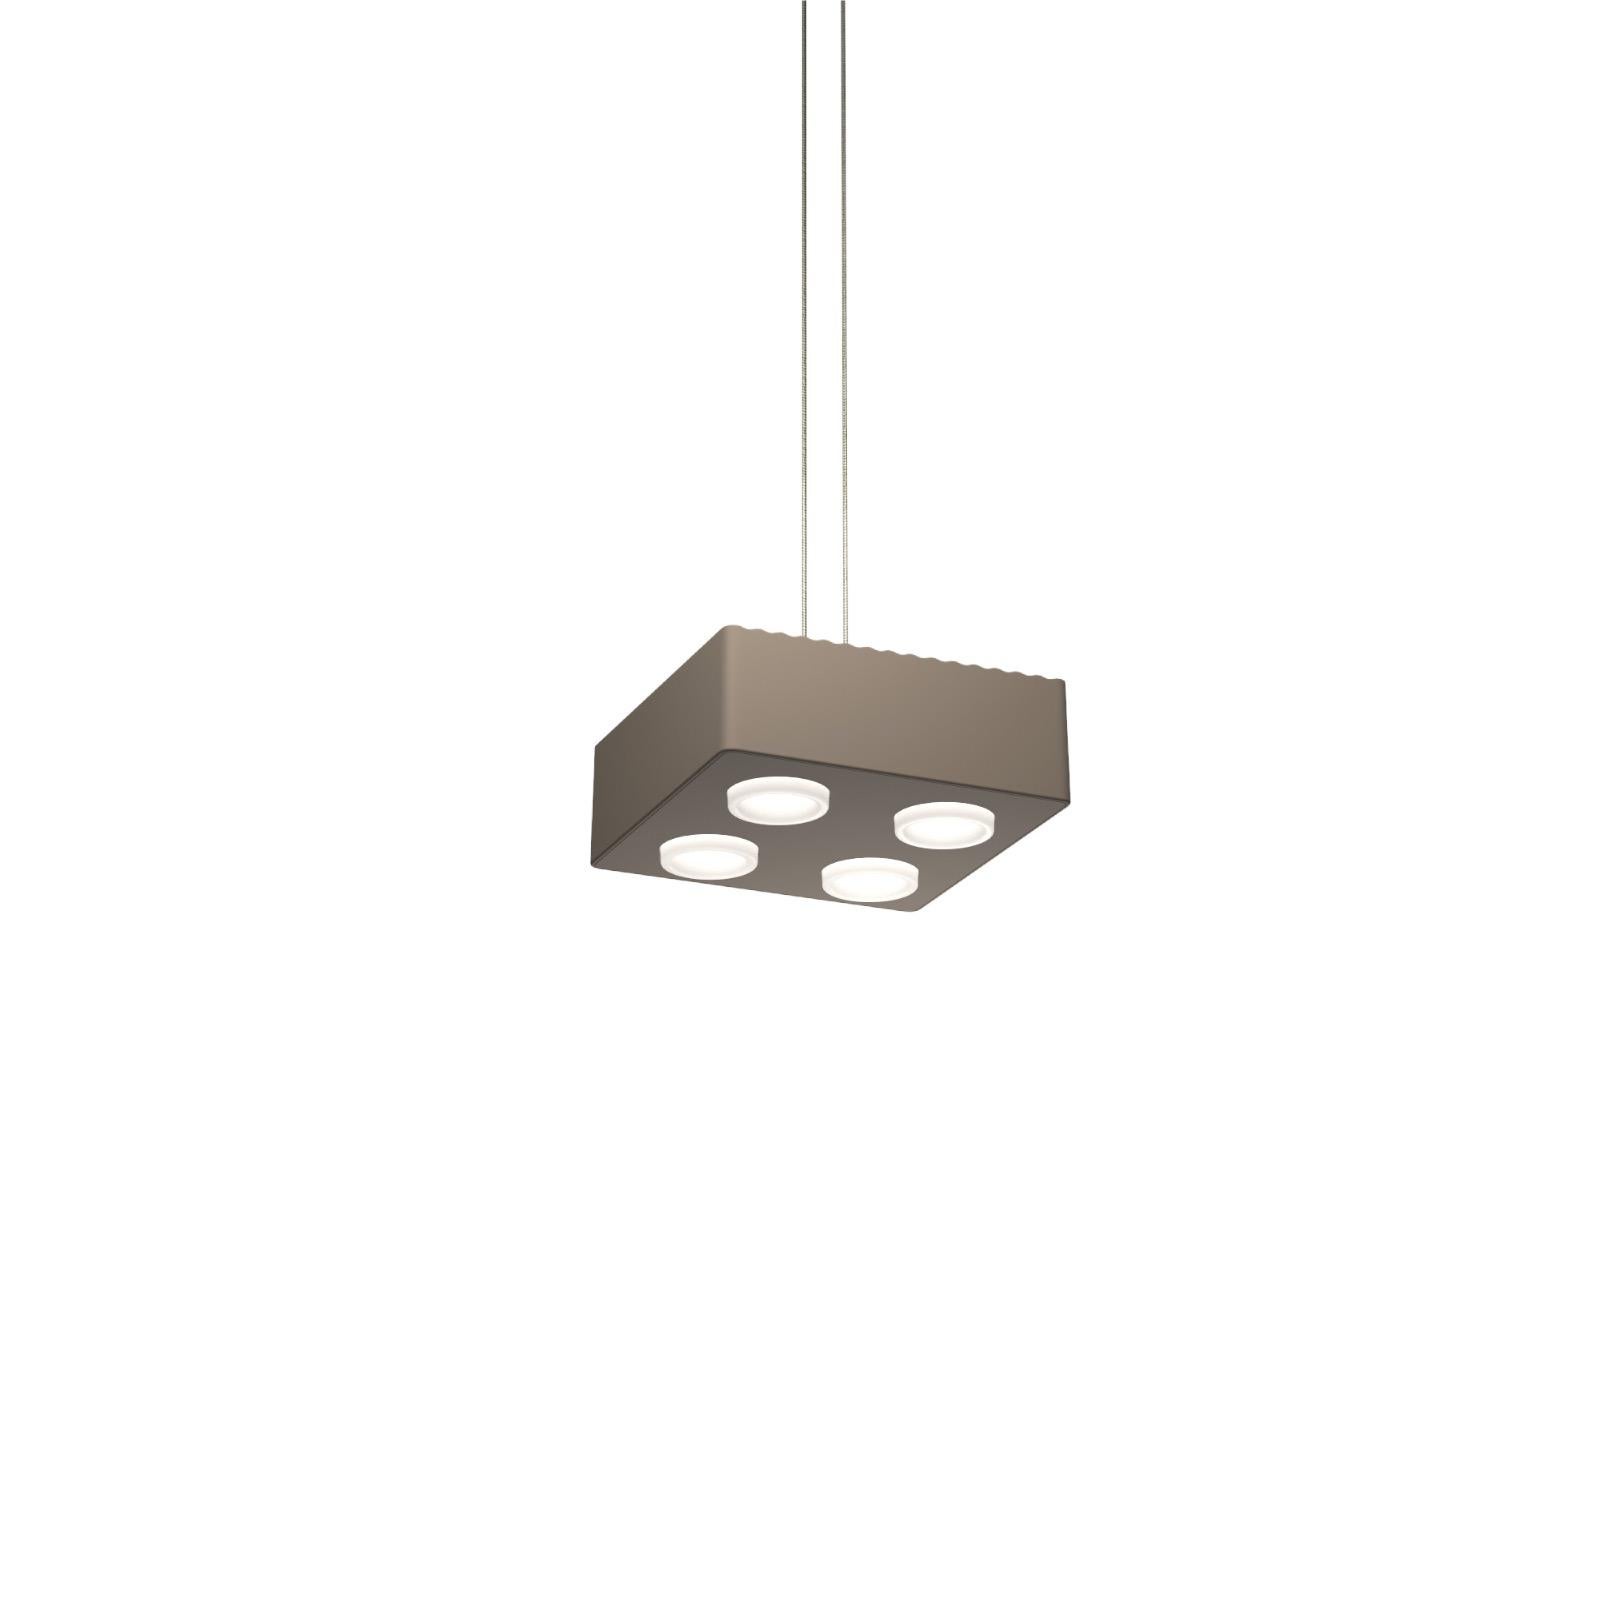 Lampe pendante Domino de Sylvain Willenz x AGO Lighting
Mud Gray - Lampe suspendue simple

Matériaux : Aluminium 
Source lumineuse : LED intégrée (COB), DC
Watt. 15 W
Temp. de couleur 2700 / 3000K
Longueur du câble : 3M 

Couleurs